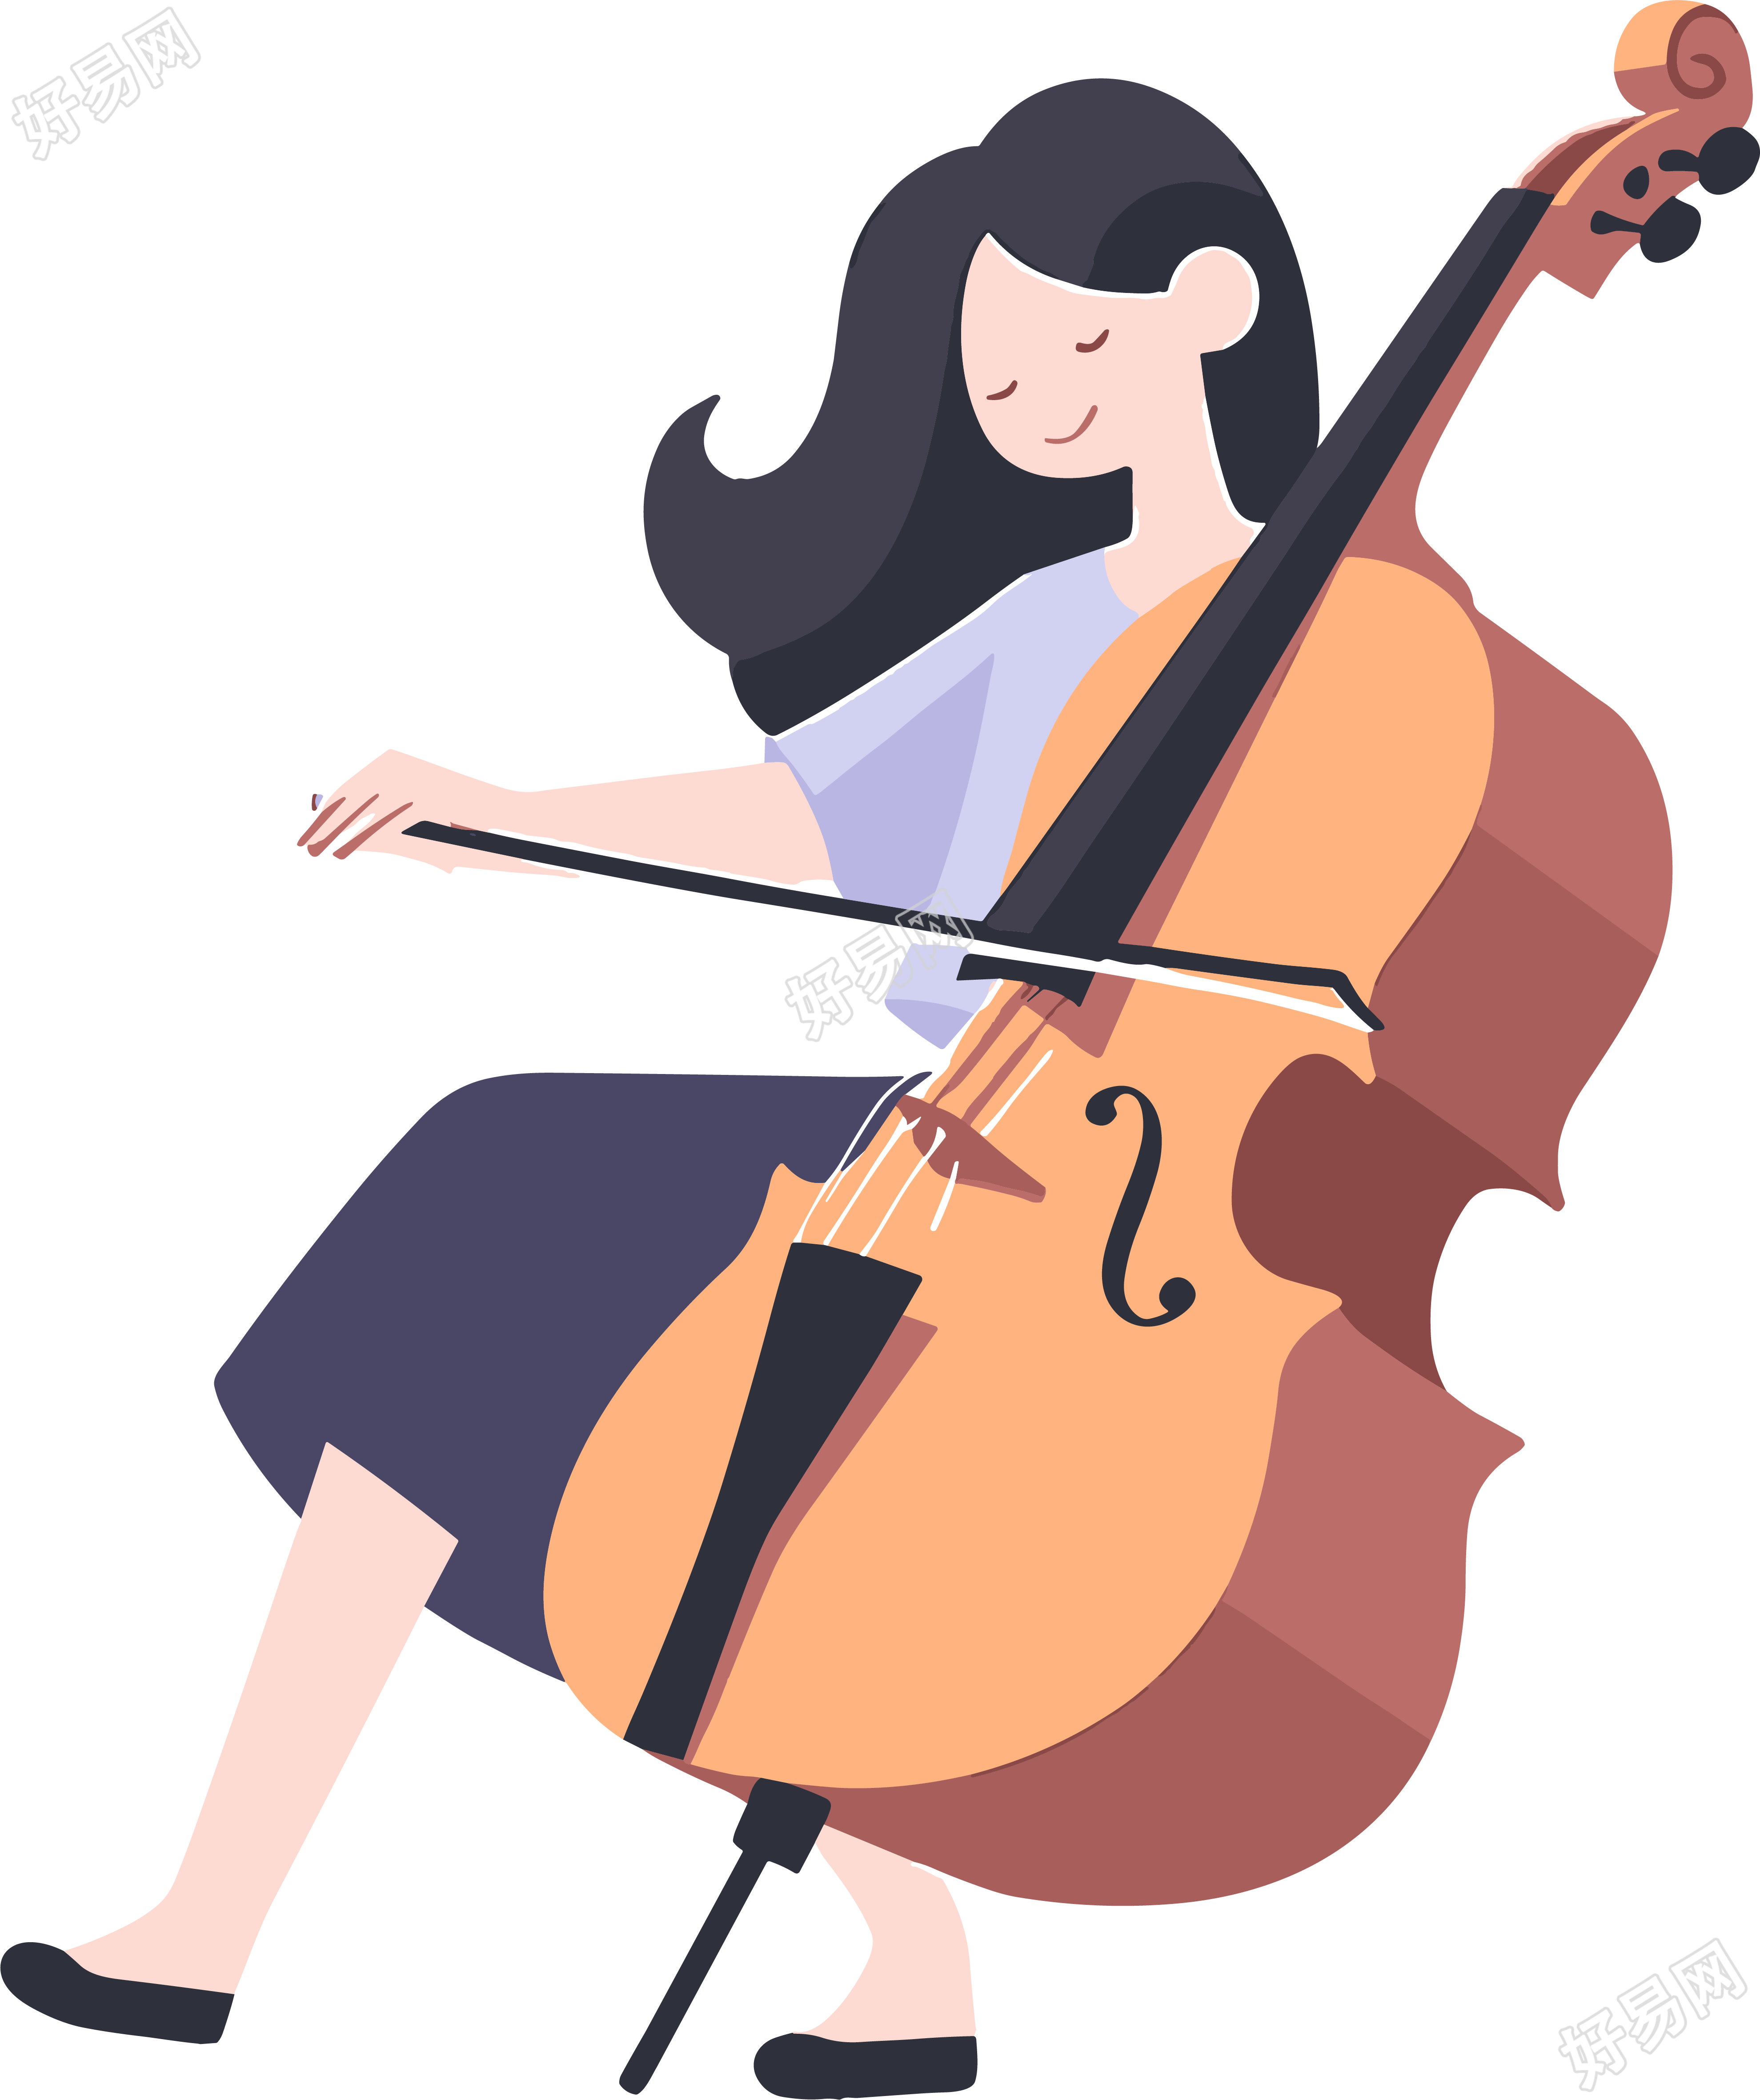 大提琴演奏插画设计素材